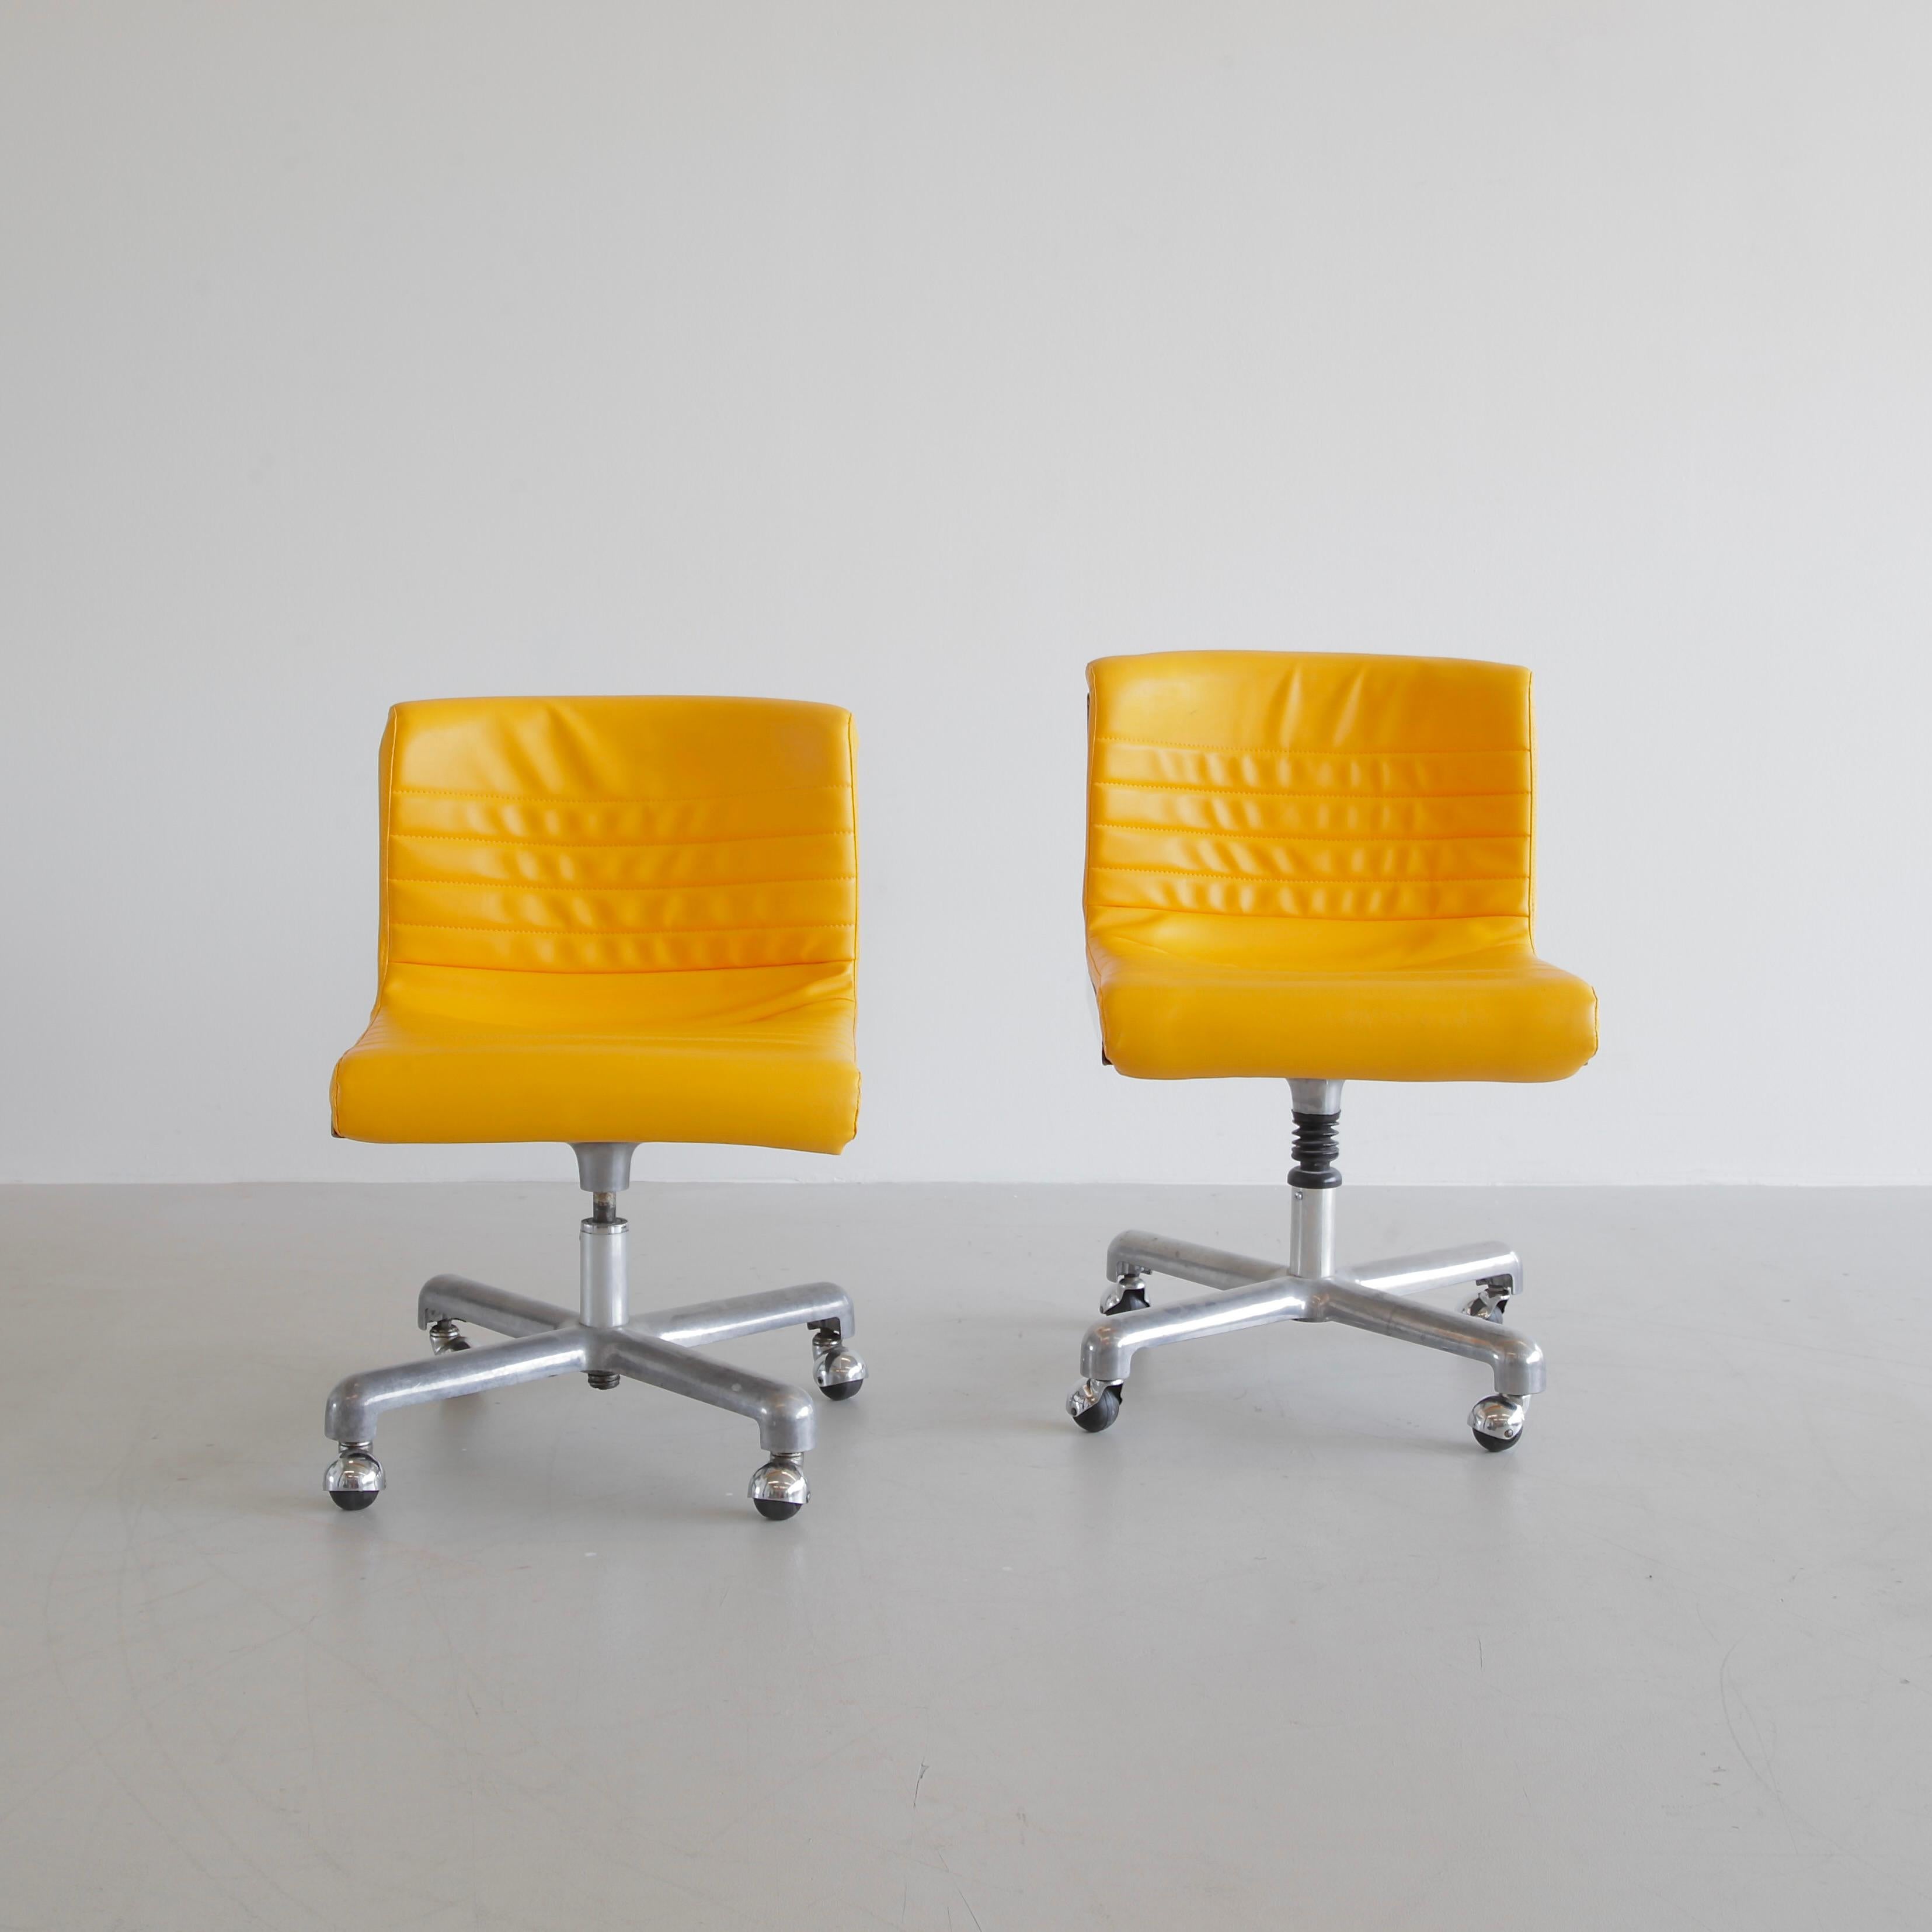 Ein Paar Bürostühle, entworfen von Ettore Sottsass und Hans von Klier. Italien, Designzentrum (Poltronova), 1969.

Ein originaler Satz der PROGRESS-Drehstühle. Polsterung aus gelbem Kunstleder, Gestell aus Aluminiumguss mit Rollen. Guter